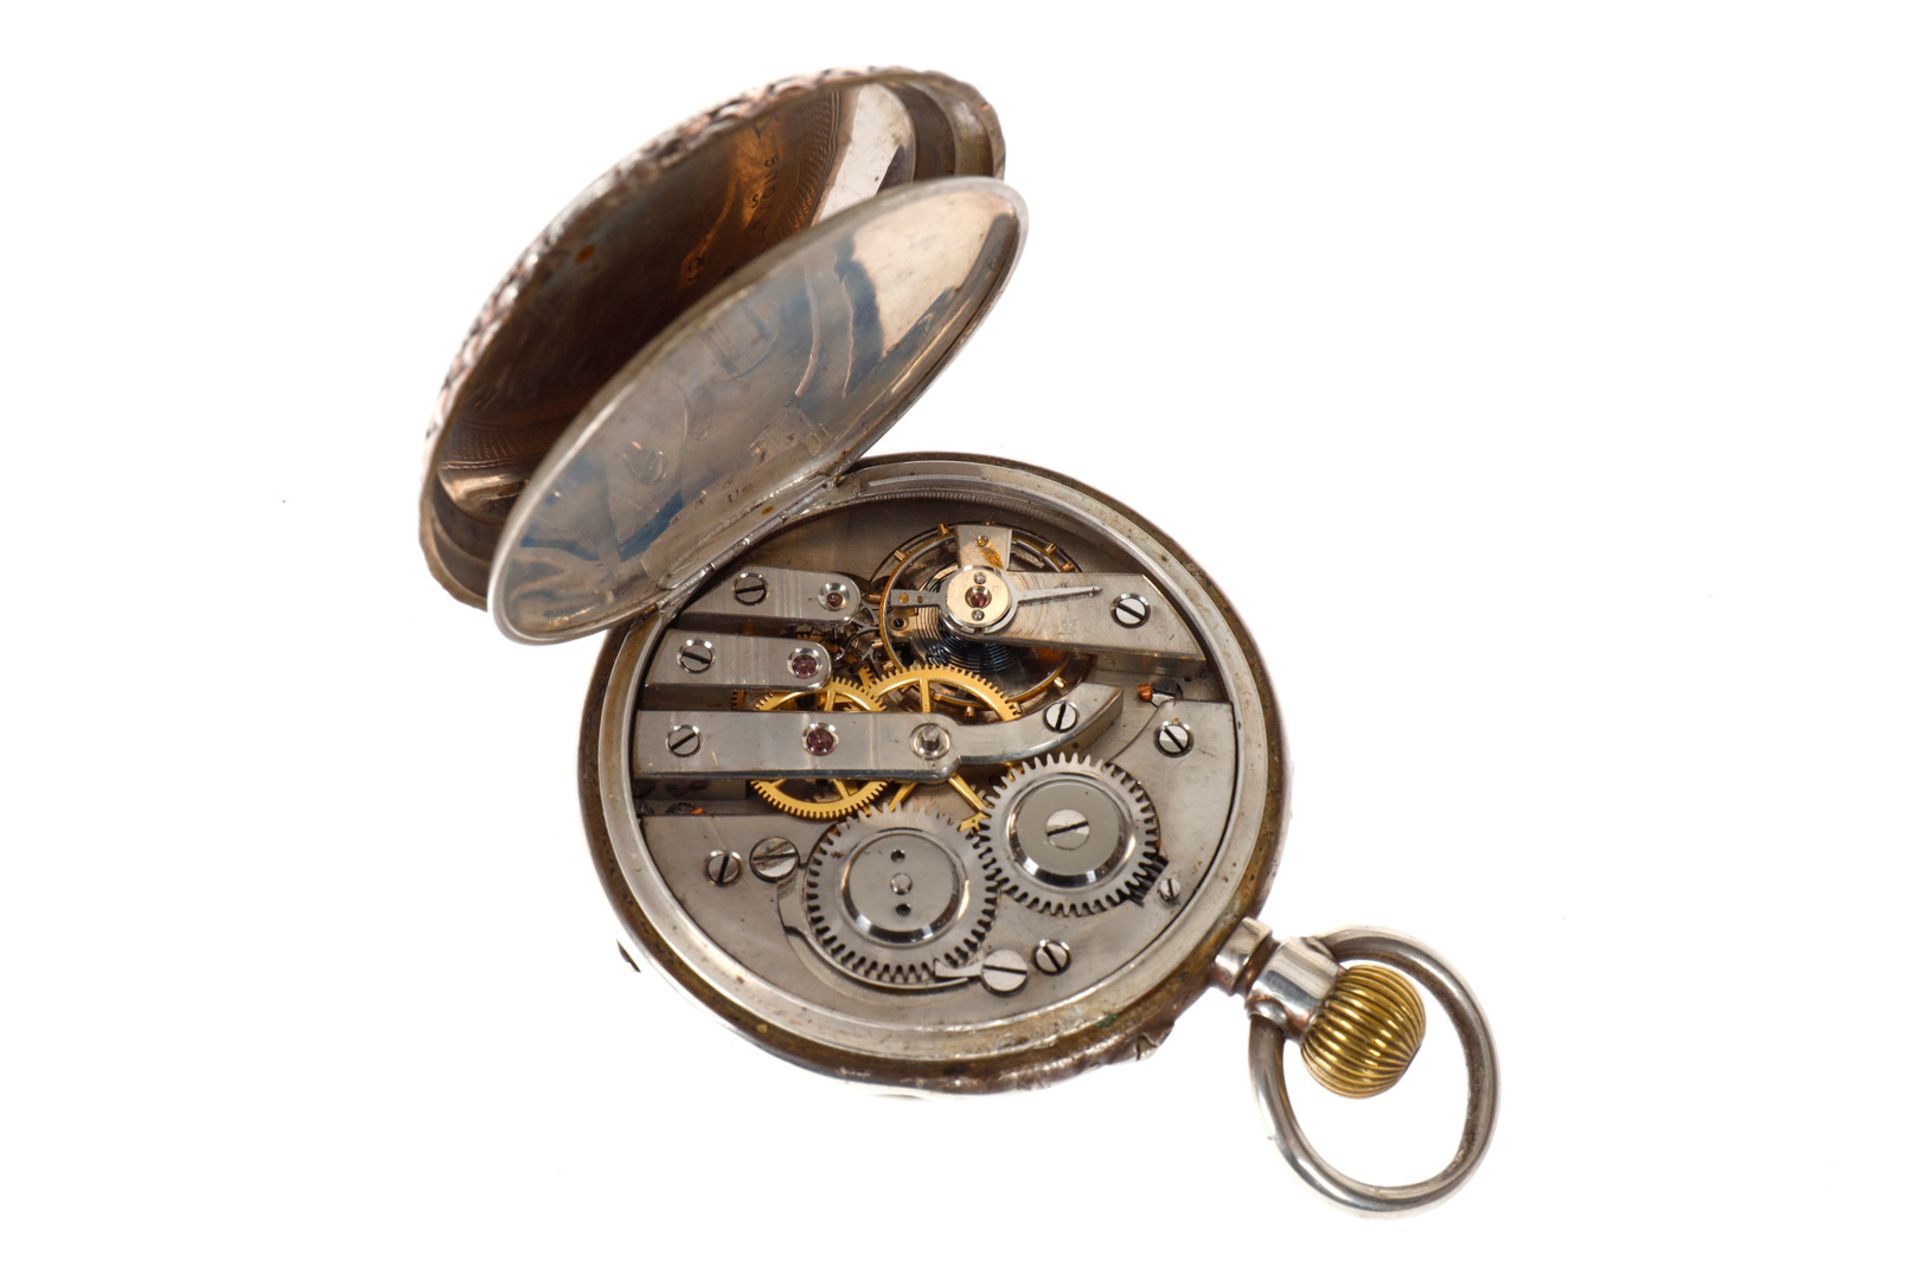 Silberne Herrentaschenuhr, 43615, 15 Rubis, Kompensationsunruh mit Feineinstellung, verziertes - Image 3 of 3